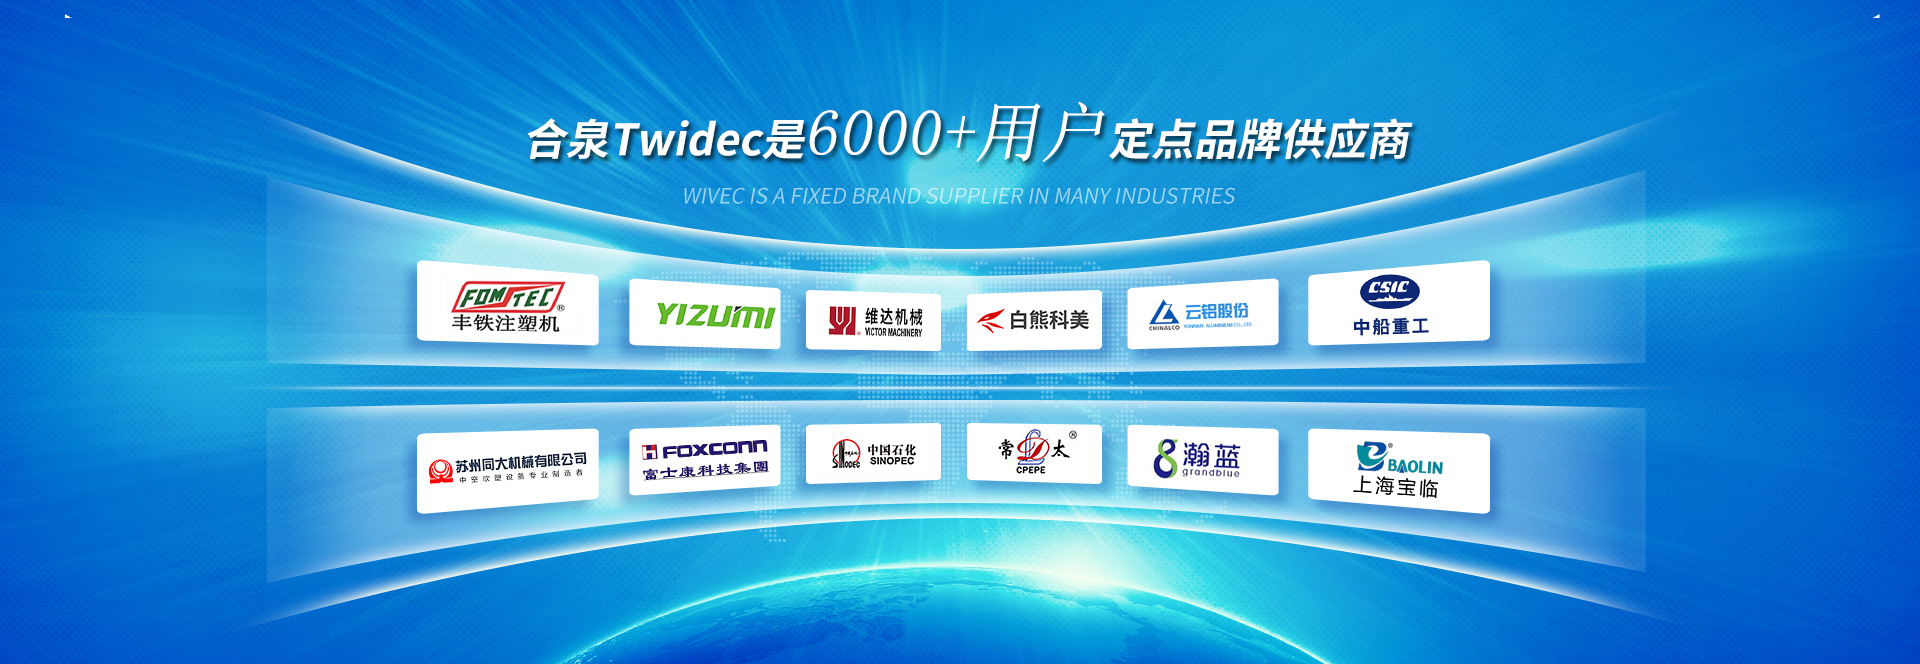 合泉Twidec是6000+用户定点品牌供应商